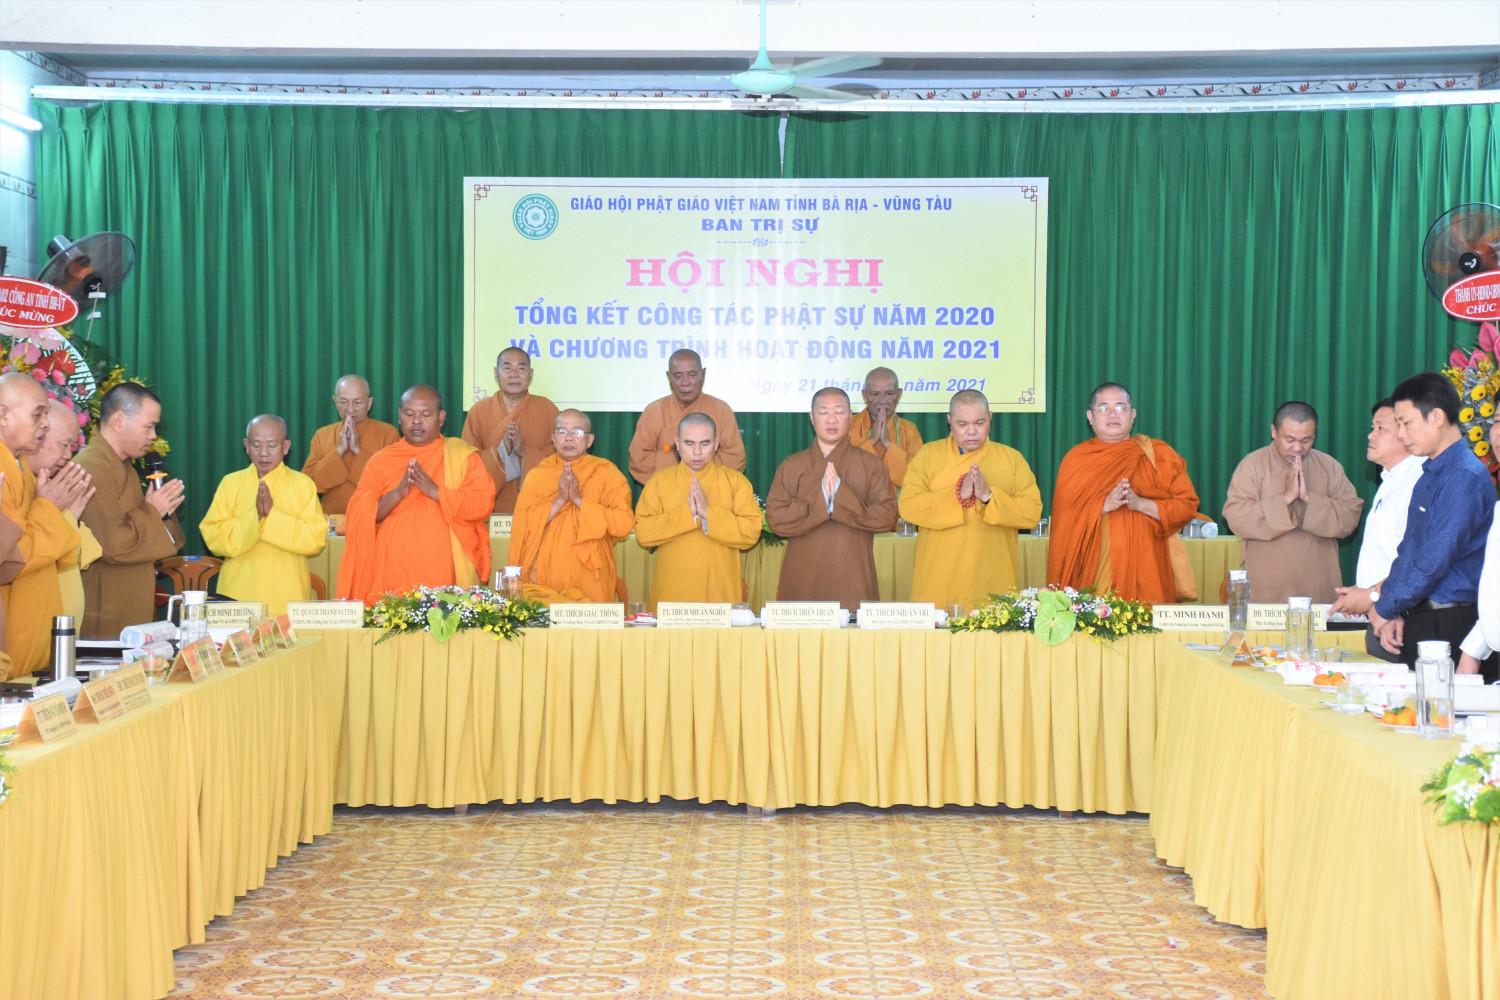 Phật Giáo Bà Rịa - Vũng Tàu: Hội nghị Tổng kết Công Tác Phật Sự năm 2020